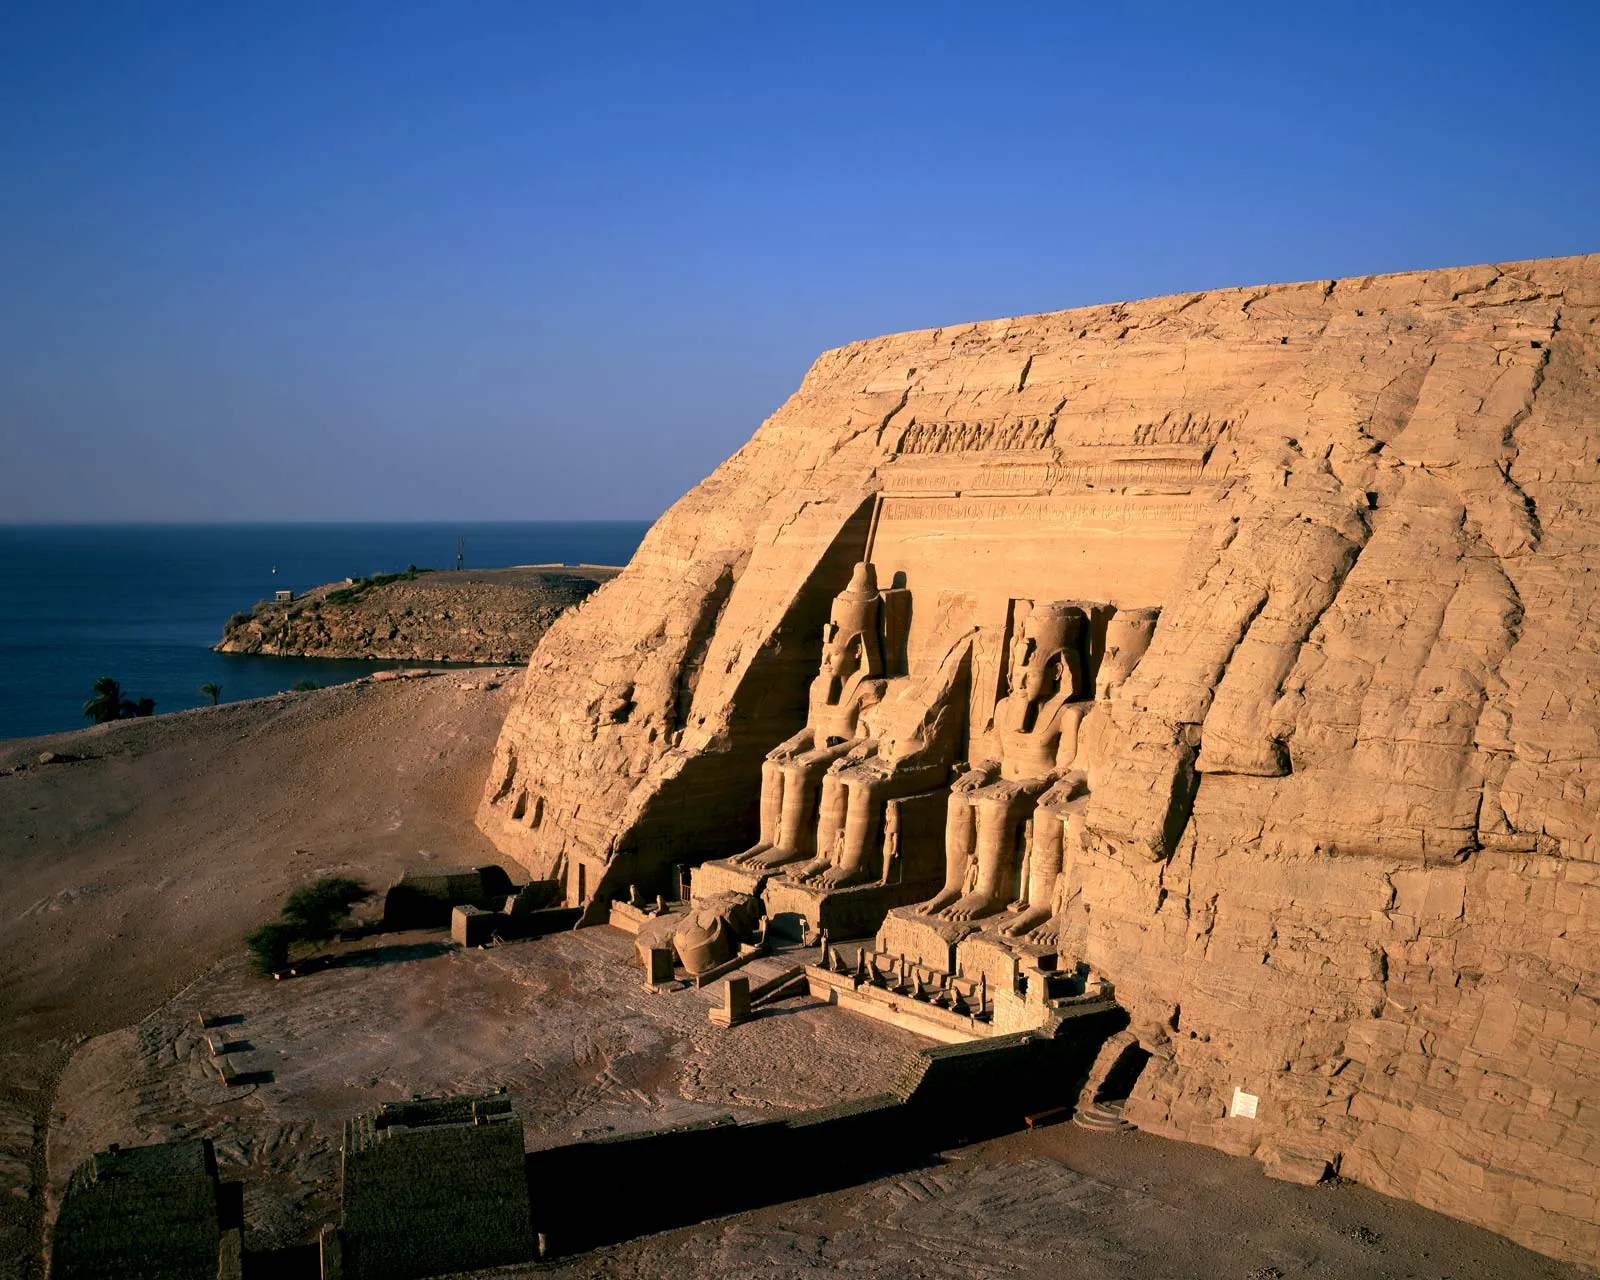  MMM Đền Abu Simbel, Ai CậpBan đầu được chạm khắc trên đá và nằm trên những ngọn đồi linh thiêng Meha và Ibshek ở miền nam Ai Cập gần biên giới Sudan, hai ngôi đền Abu Simbel được Pharaoh Ramses II xây dựng như một phần của chương trình xây dựng vĩ đại ở Nubia, khi đó do Ai Cập kiểm soát. Các cấu trúc ban đầu được hoàn thành vào thế kỷ 13 trước Công nguyên. Thiên niên kỷ sau đó, các ngôi đền được nhà sử học Thụy Sĩ Jean Louis Burckhardt khám phá lại vào năm 1813 và được nhà khảo cổ học người Ý Giovanni Battista Belzoni khai quật vào năm 1817, người đã thành công trong việc loại bỏ cát lấp đầy chúng trước khi mở chúng ra. tới công chúng. Vào những năm 1960, khi nước hồ Nasser dâng cao sau khi xây dựng Đập cao Aswan, các ngôi đền đã được tháo dỡ và xây dựng lại trên vùng đất cao hơn, trên một ngọn đồi nhân tạo, được che chắn khỏi các tác nhân. 